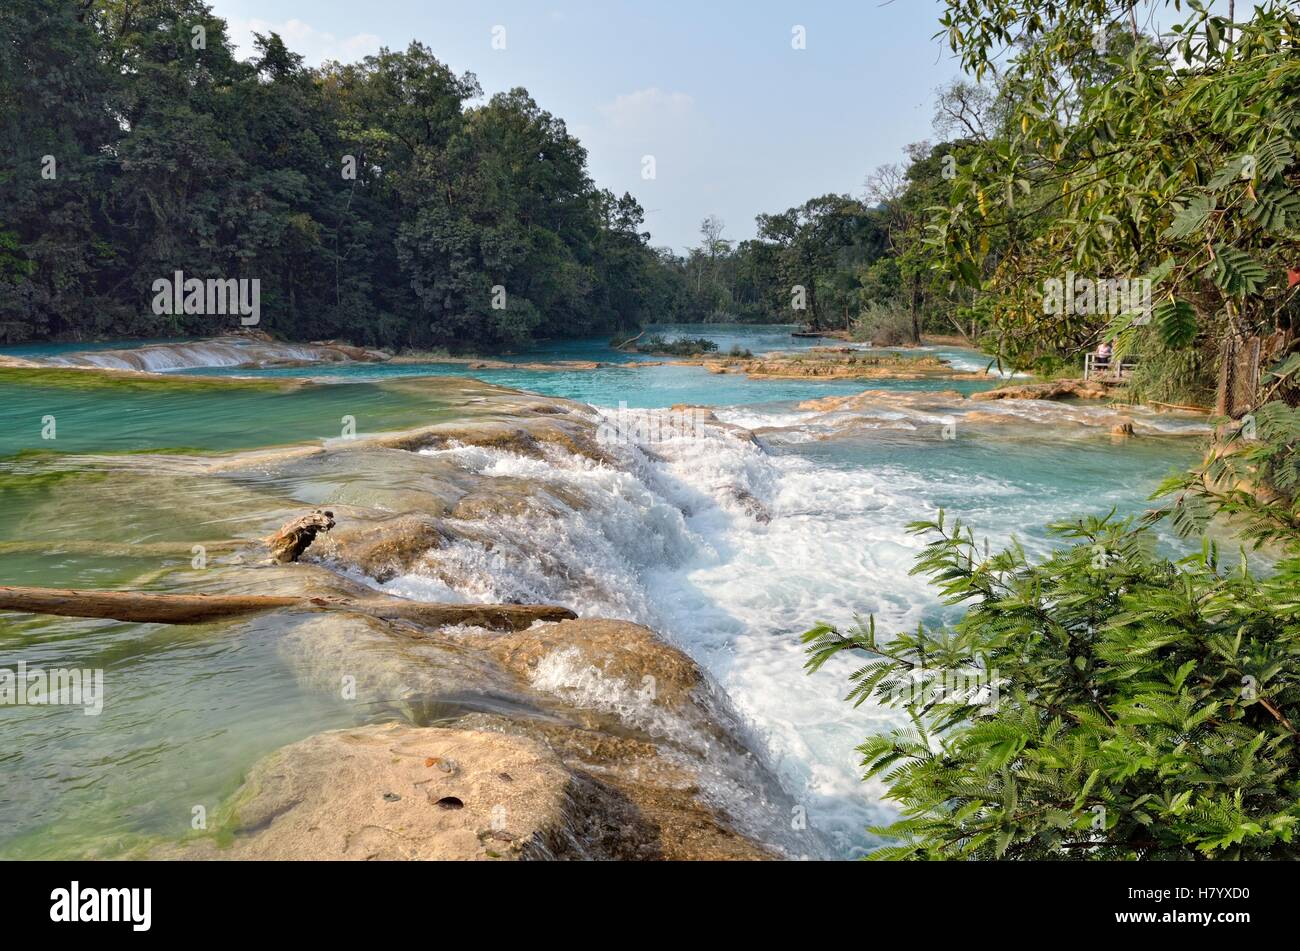 Cataratas de Agua Azul, cascades d'eau bleue, rocky pas de Rio Yax, Palenque, Chiapas, Mexique Banque D'Images